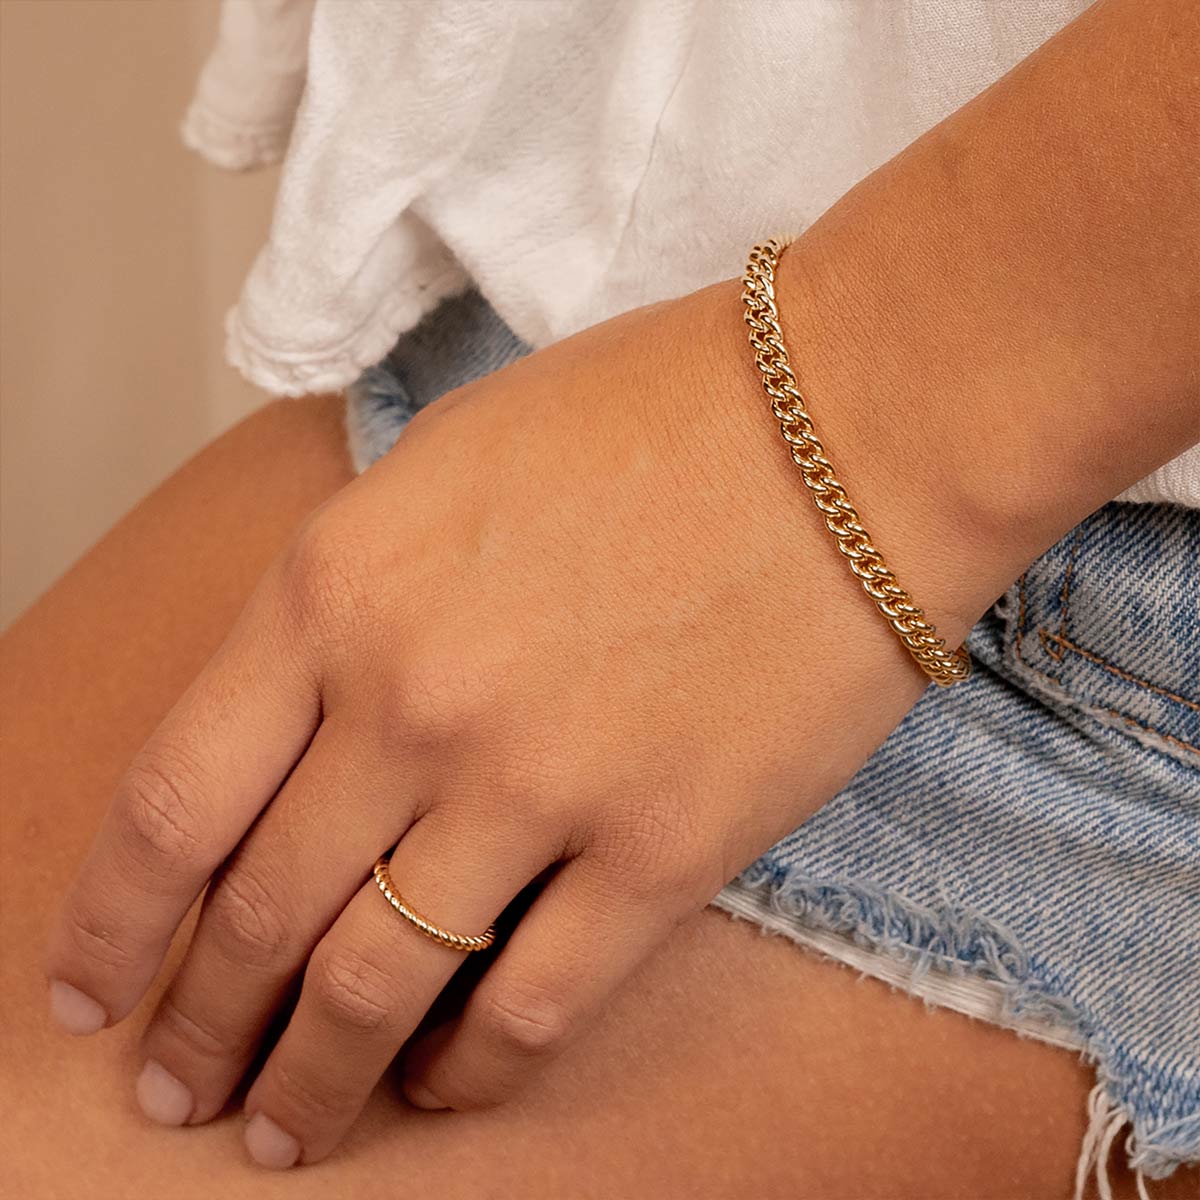 Simple gold chain bracelet